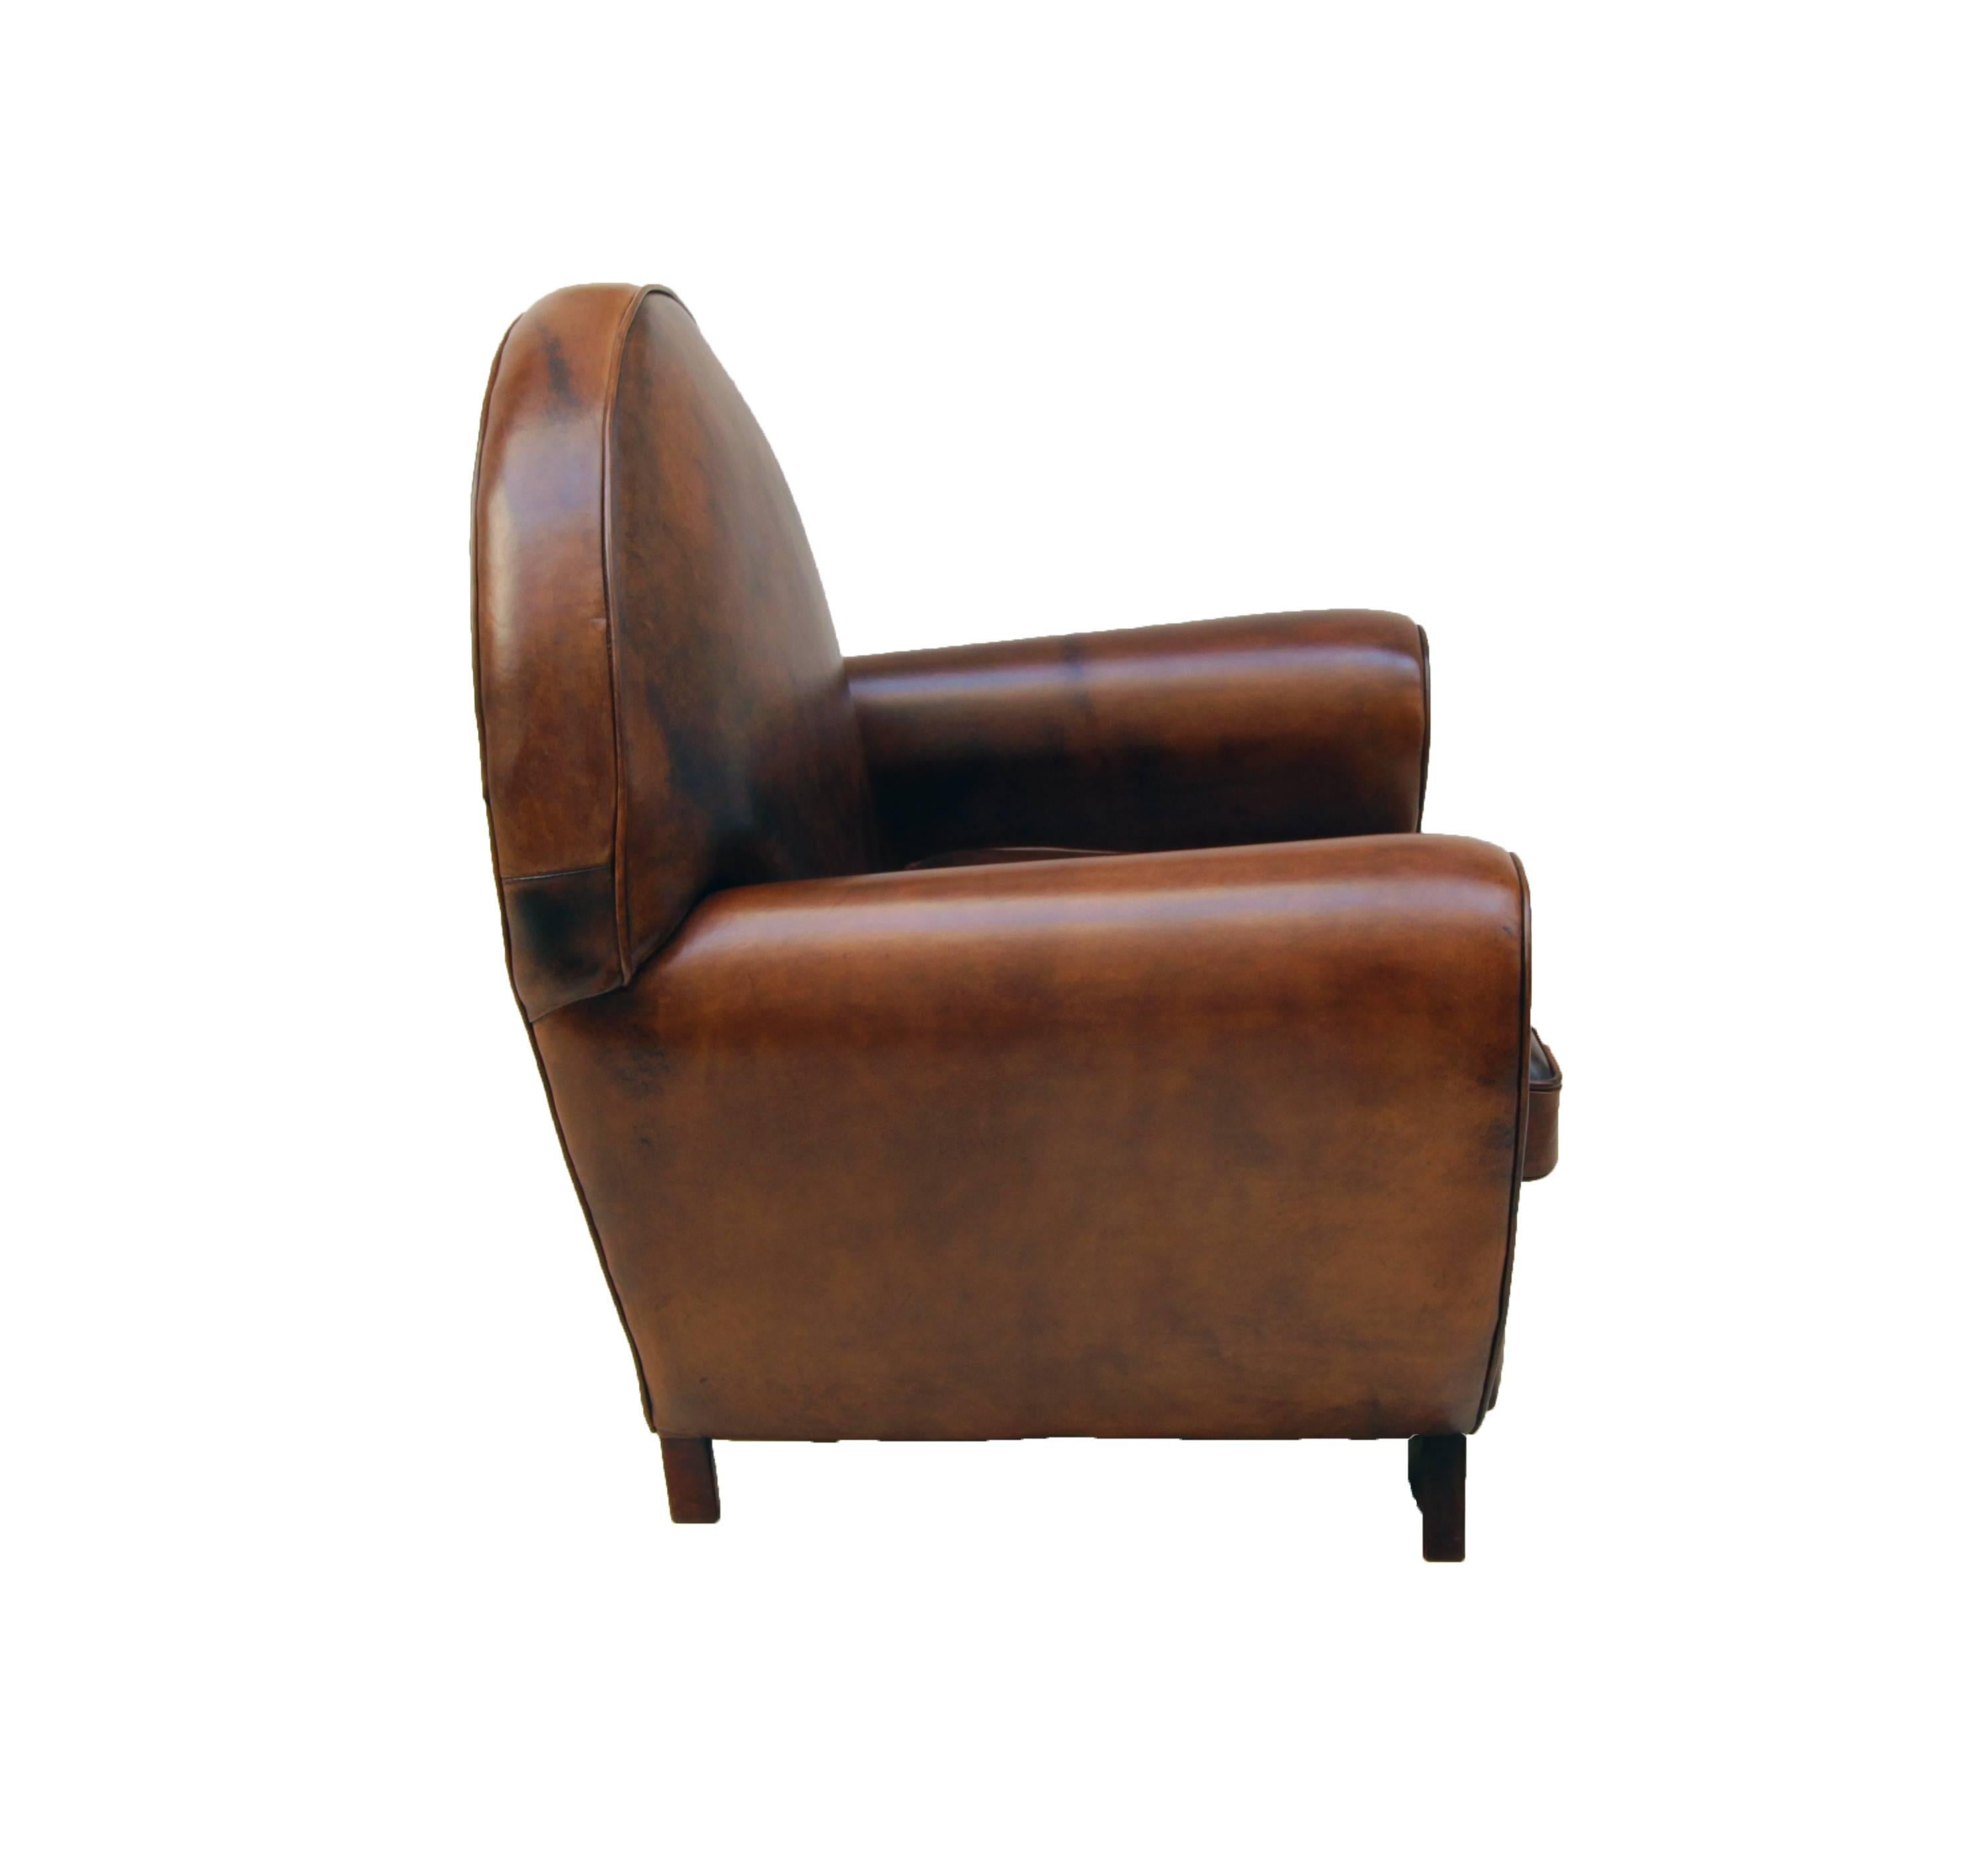 Dieser Clubsessel ist mit handpatiniertem Schafsleder bezogen. Die Sessel haben eine sehr schöne Art-Déco-Form. Das Leder ist sehr robust und es ist sehr bequem zu sitzen.